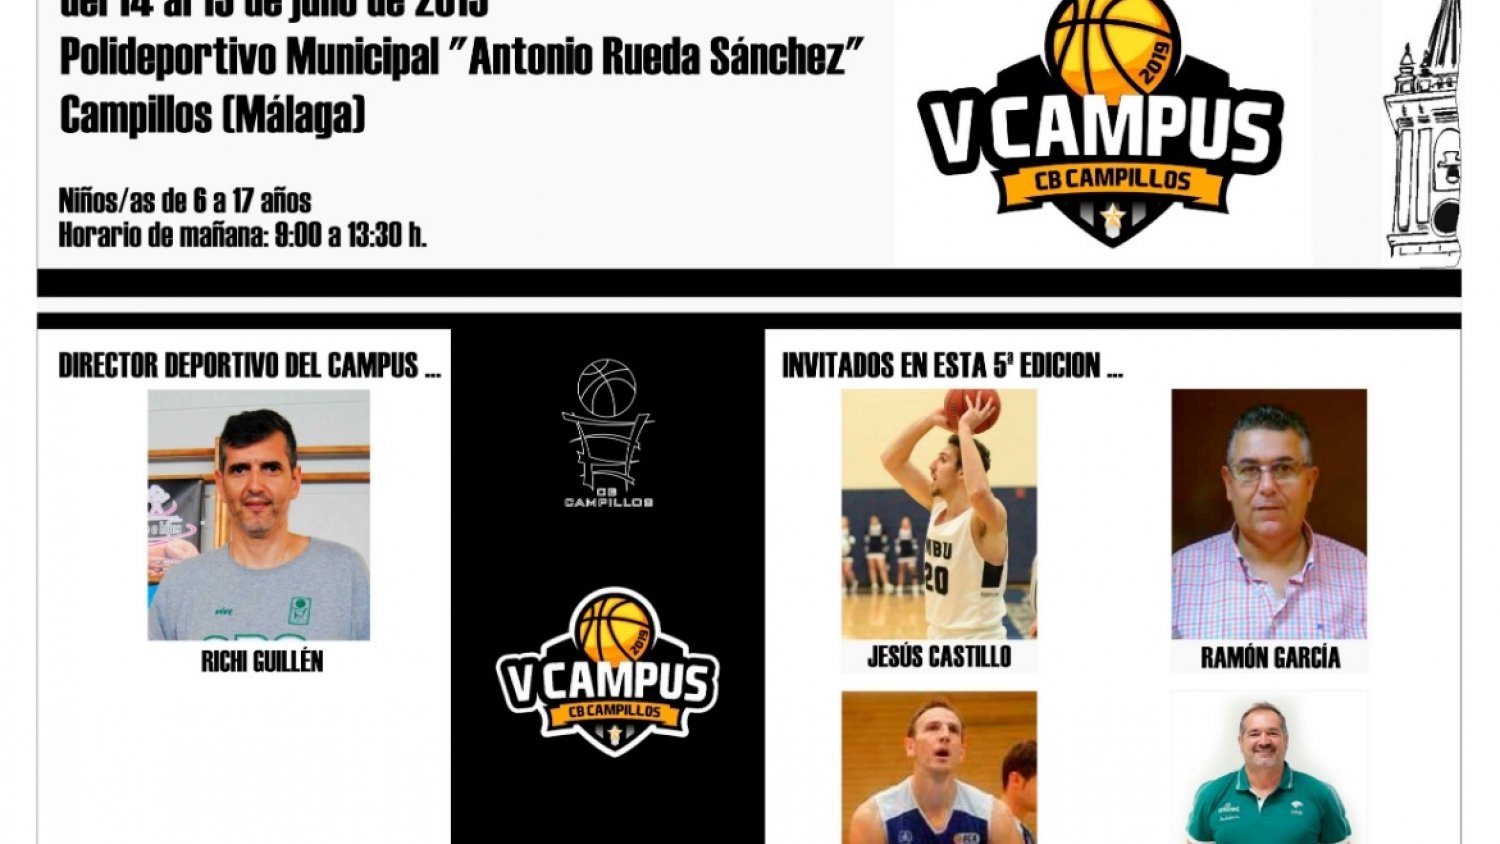 El Club Baloncesto de Campillos acogerá su ‘V Campus de Verano’ del 14 al 19 de julio